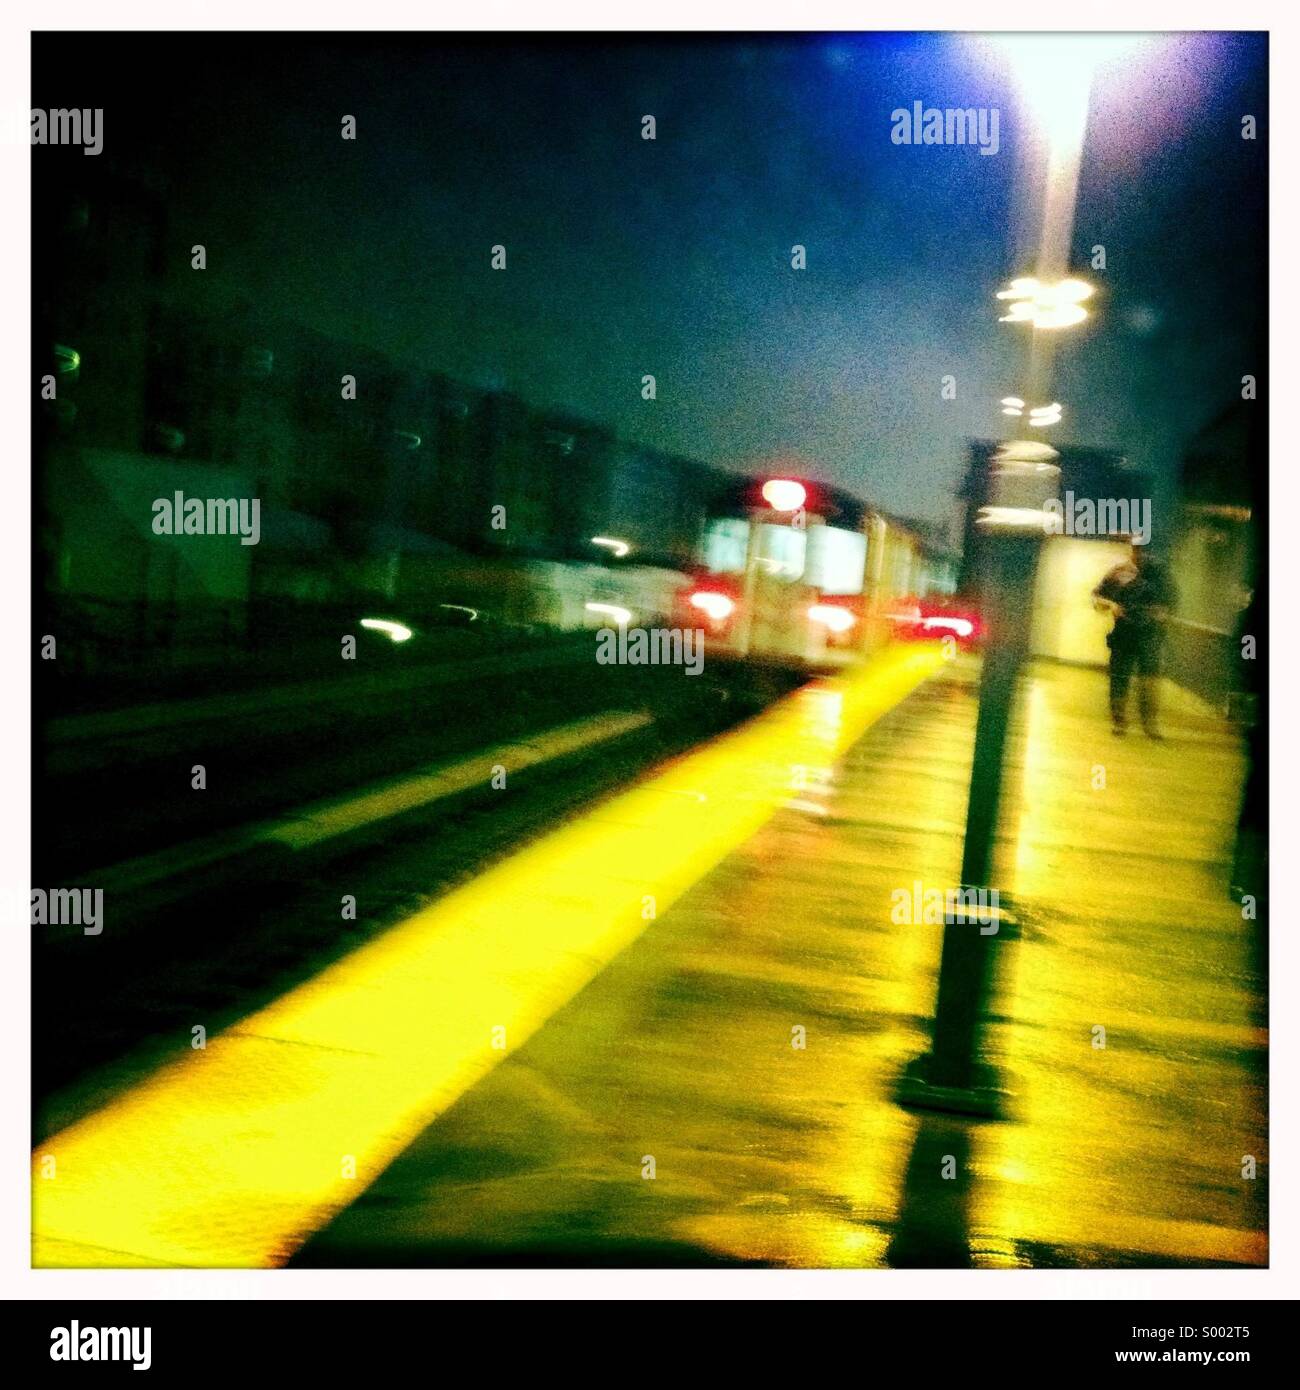 New York City Subway train de nuit Banque D'Images